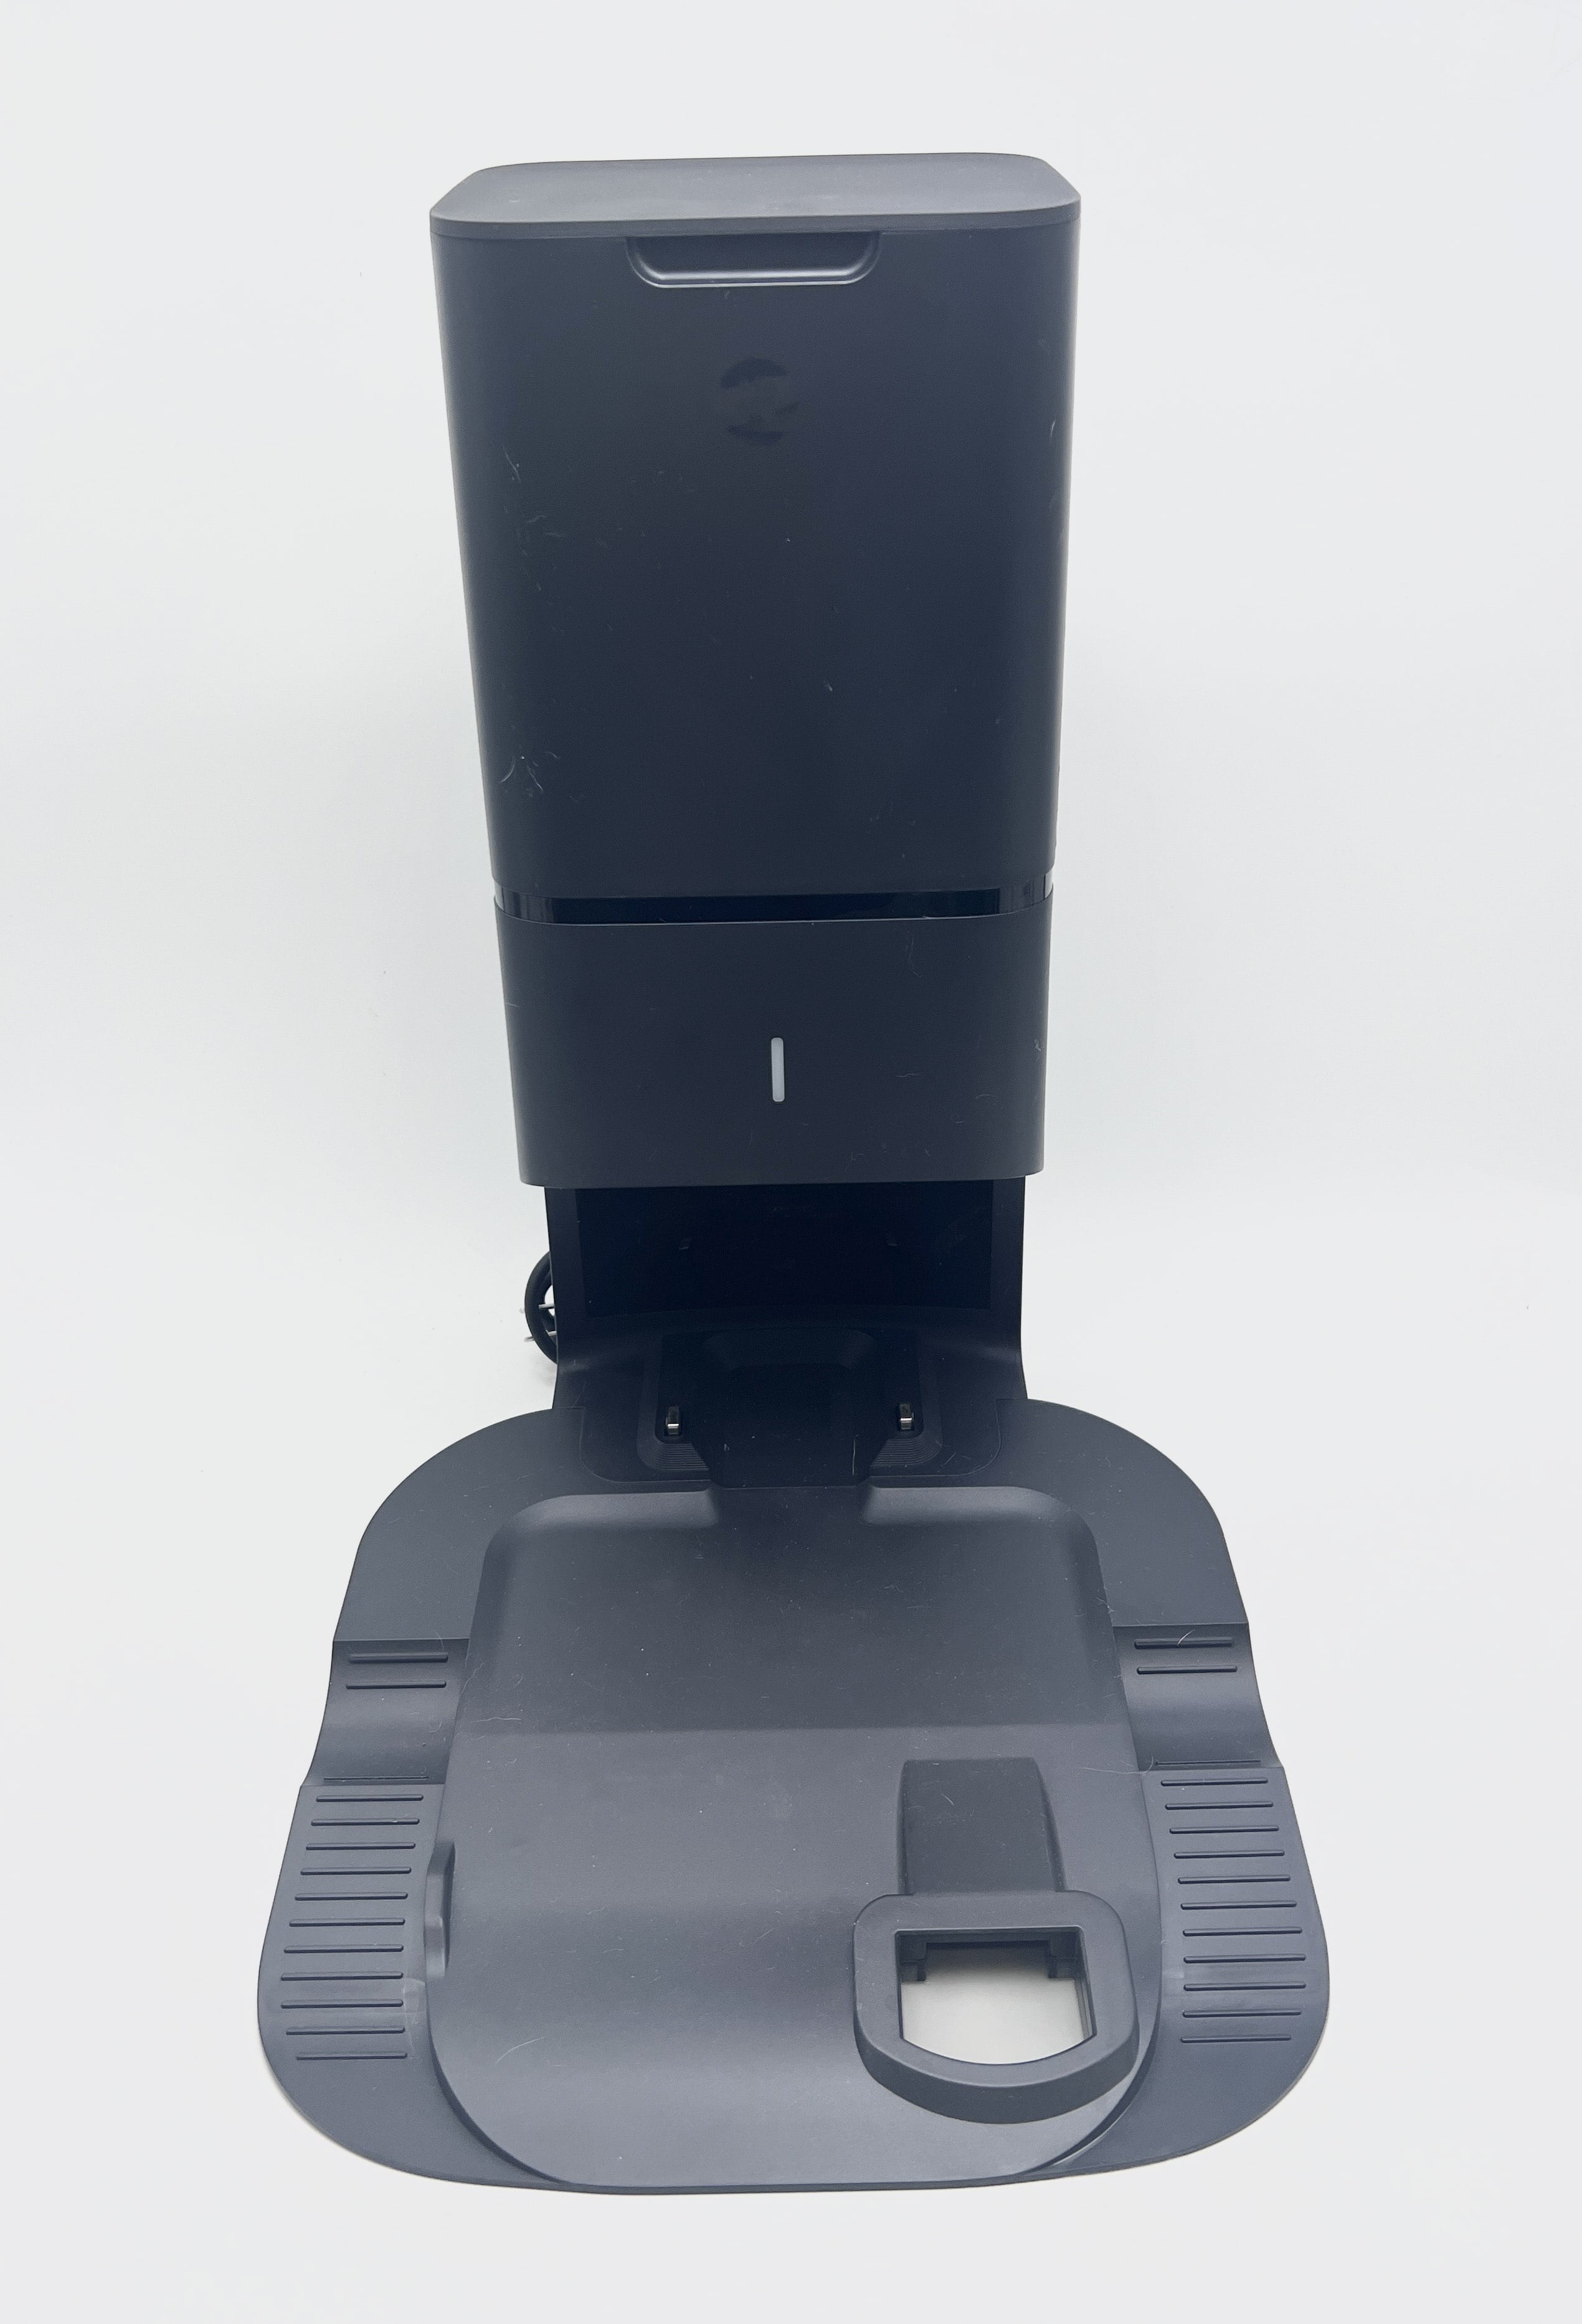 Aspirateur robot Irobot Roomba i6 - I6158